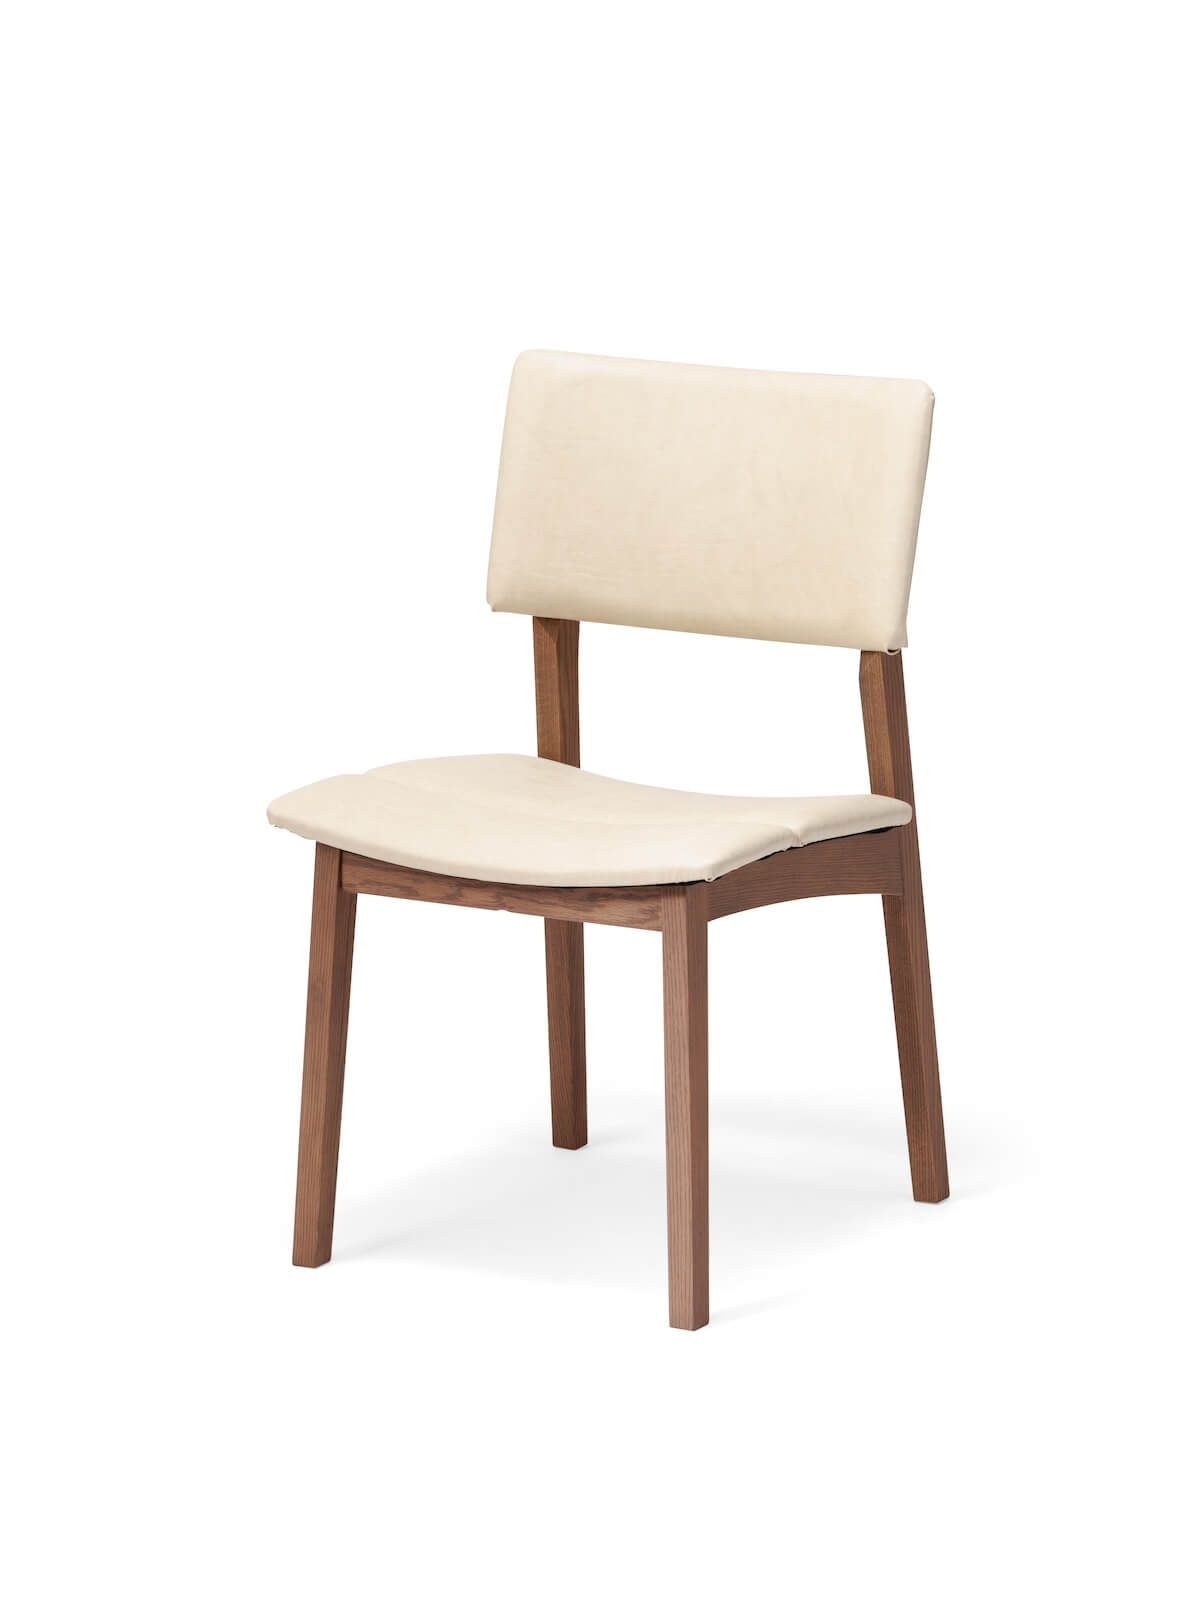 平田椅子製作所 / トッポ サイドチェア | MUKKU 家具オンライン通販サイト